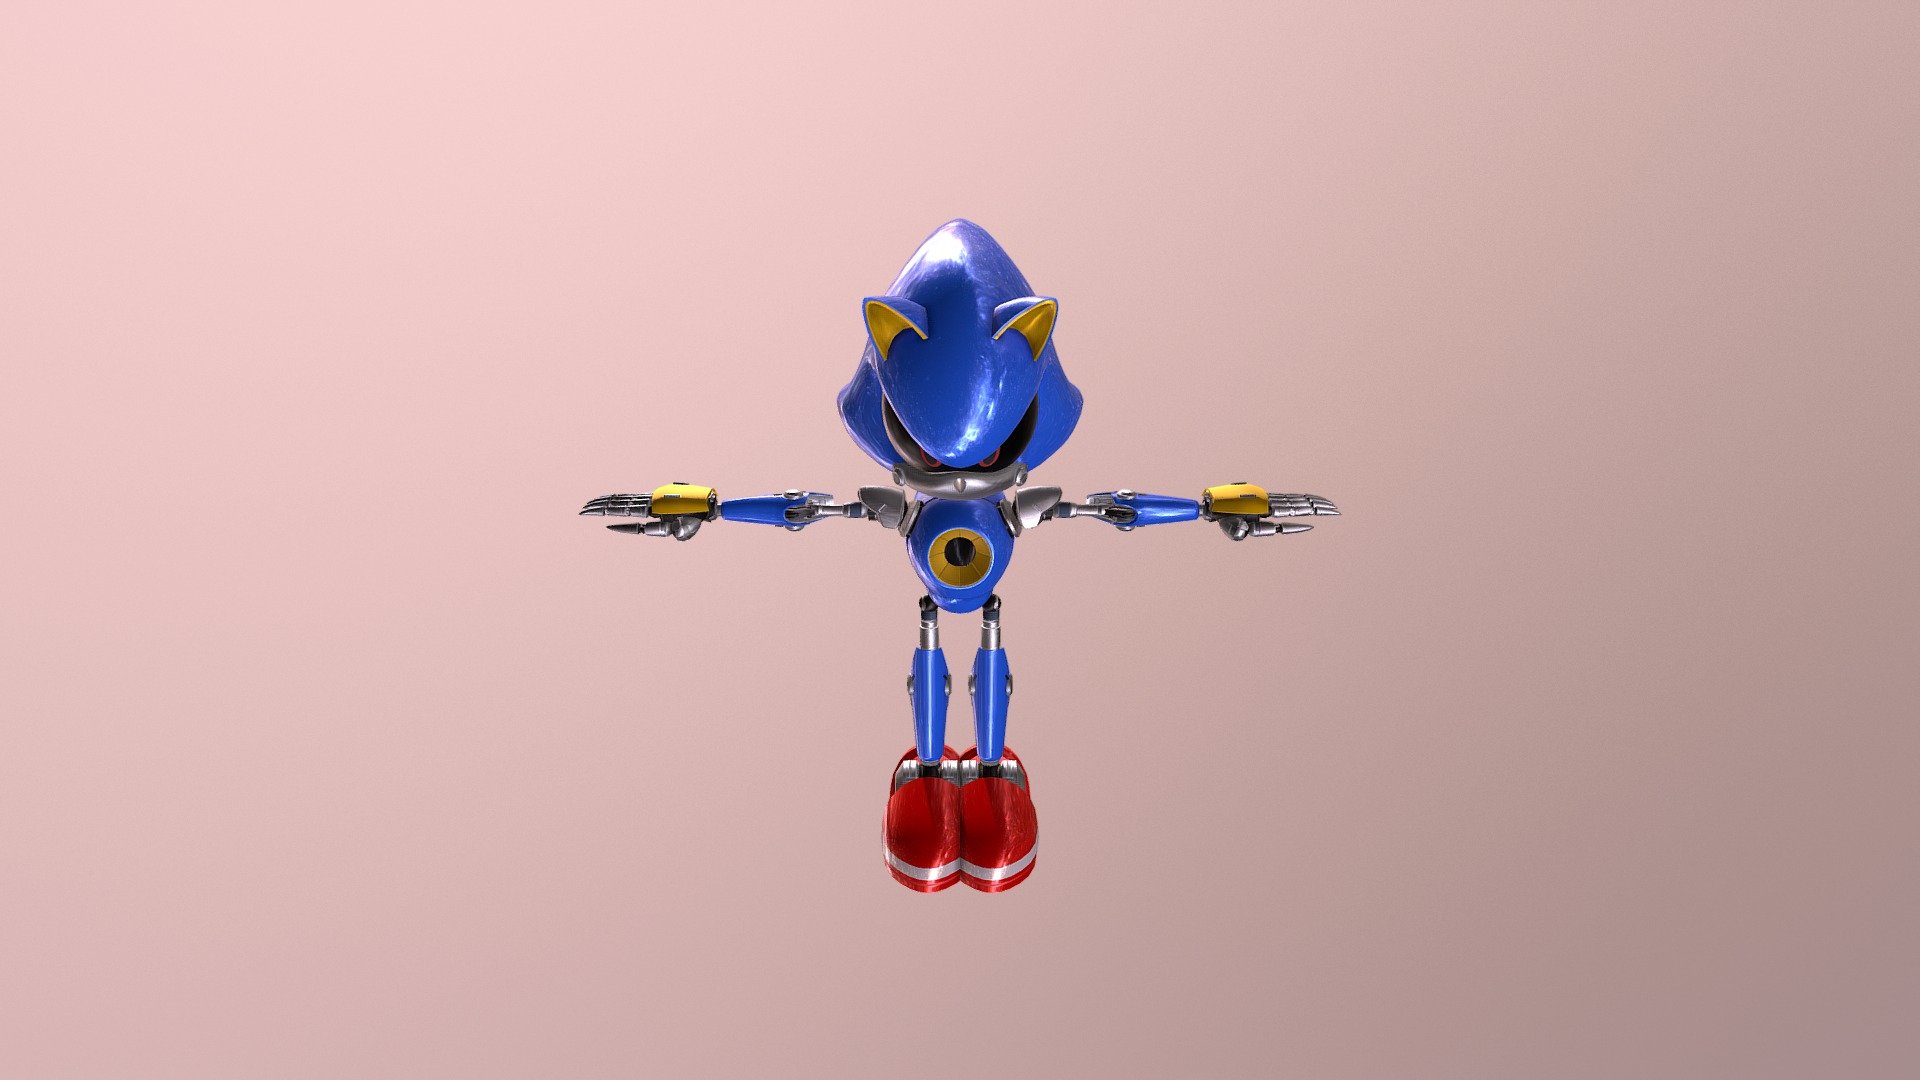 Metal Sonic 3D Model in Other 3DExport